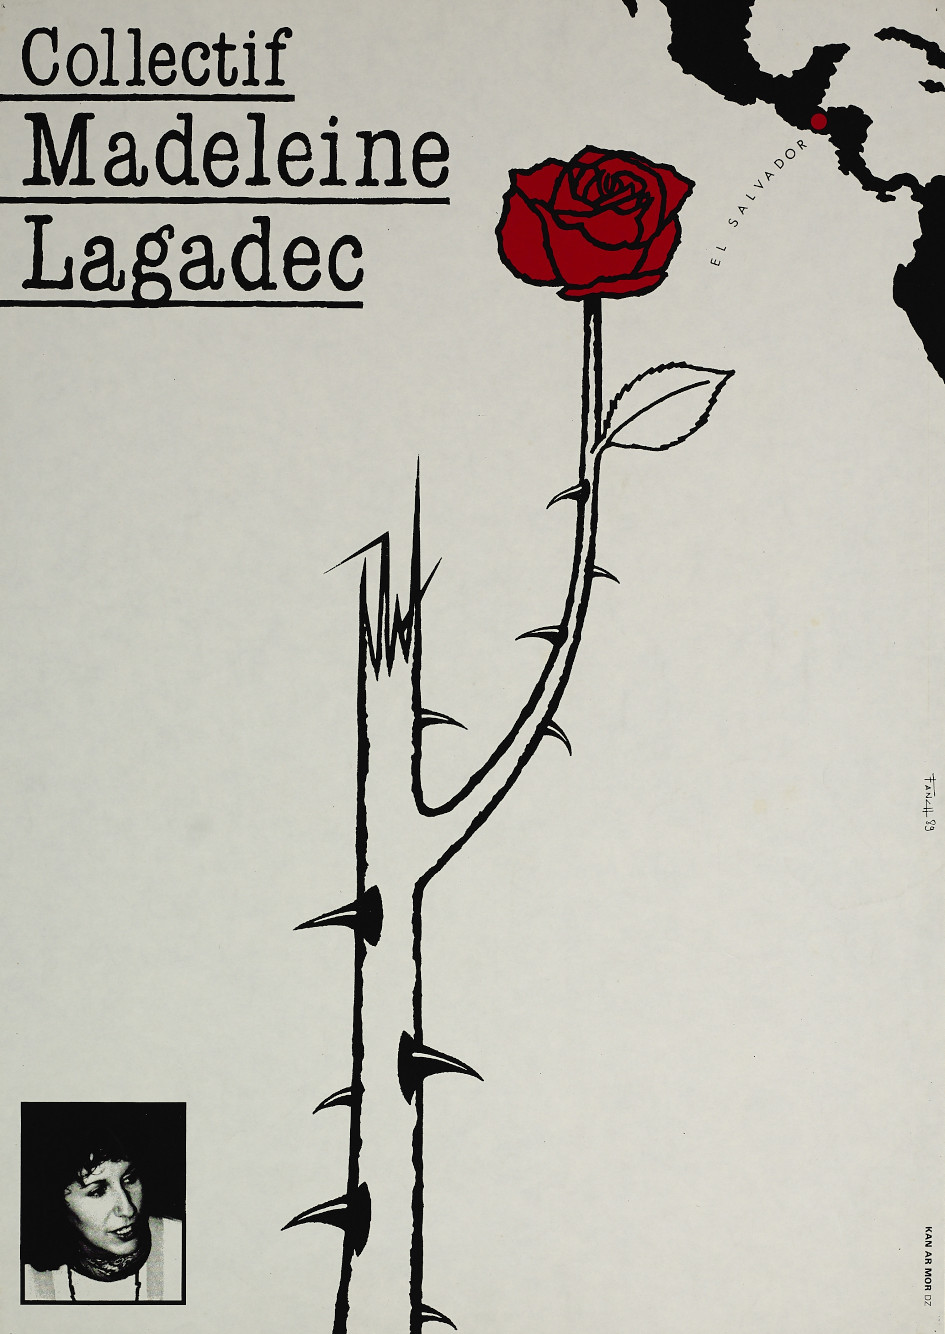 Collectif Madeleine Lagadec, affiche de Fañch Le Henaff, 1919. Collections Musée de Bretagne, Rennes: 2010.0032.106, CC-BY-NC-ND.